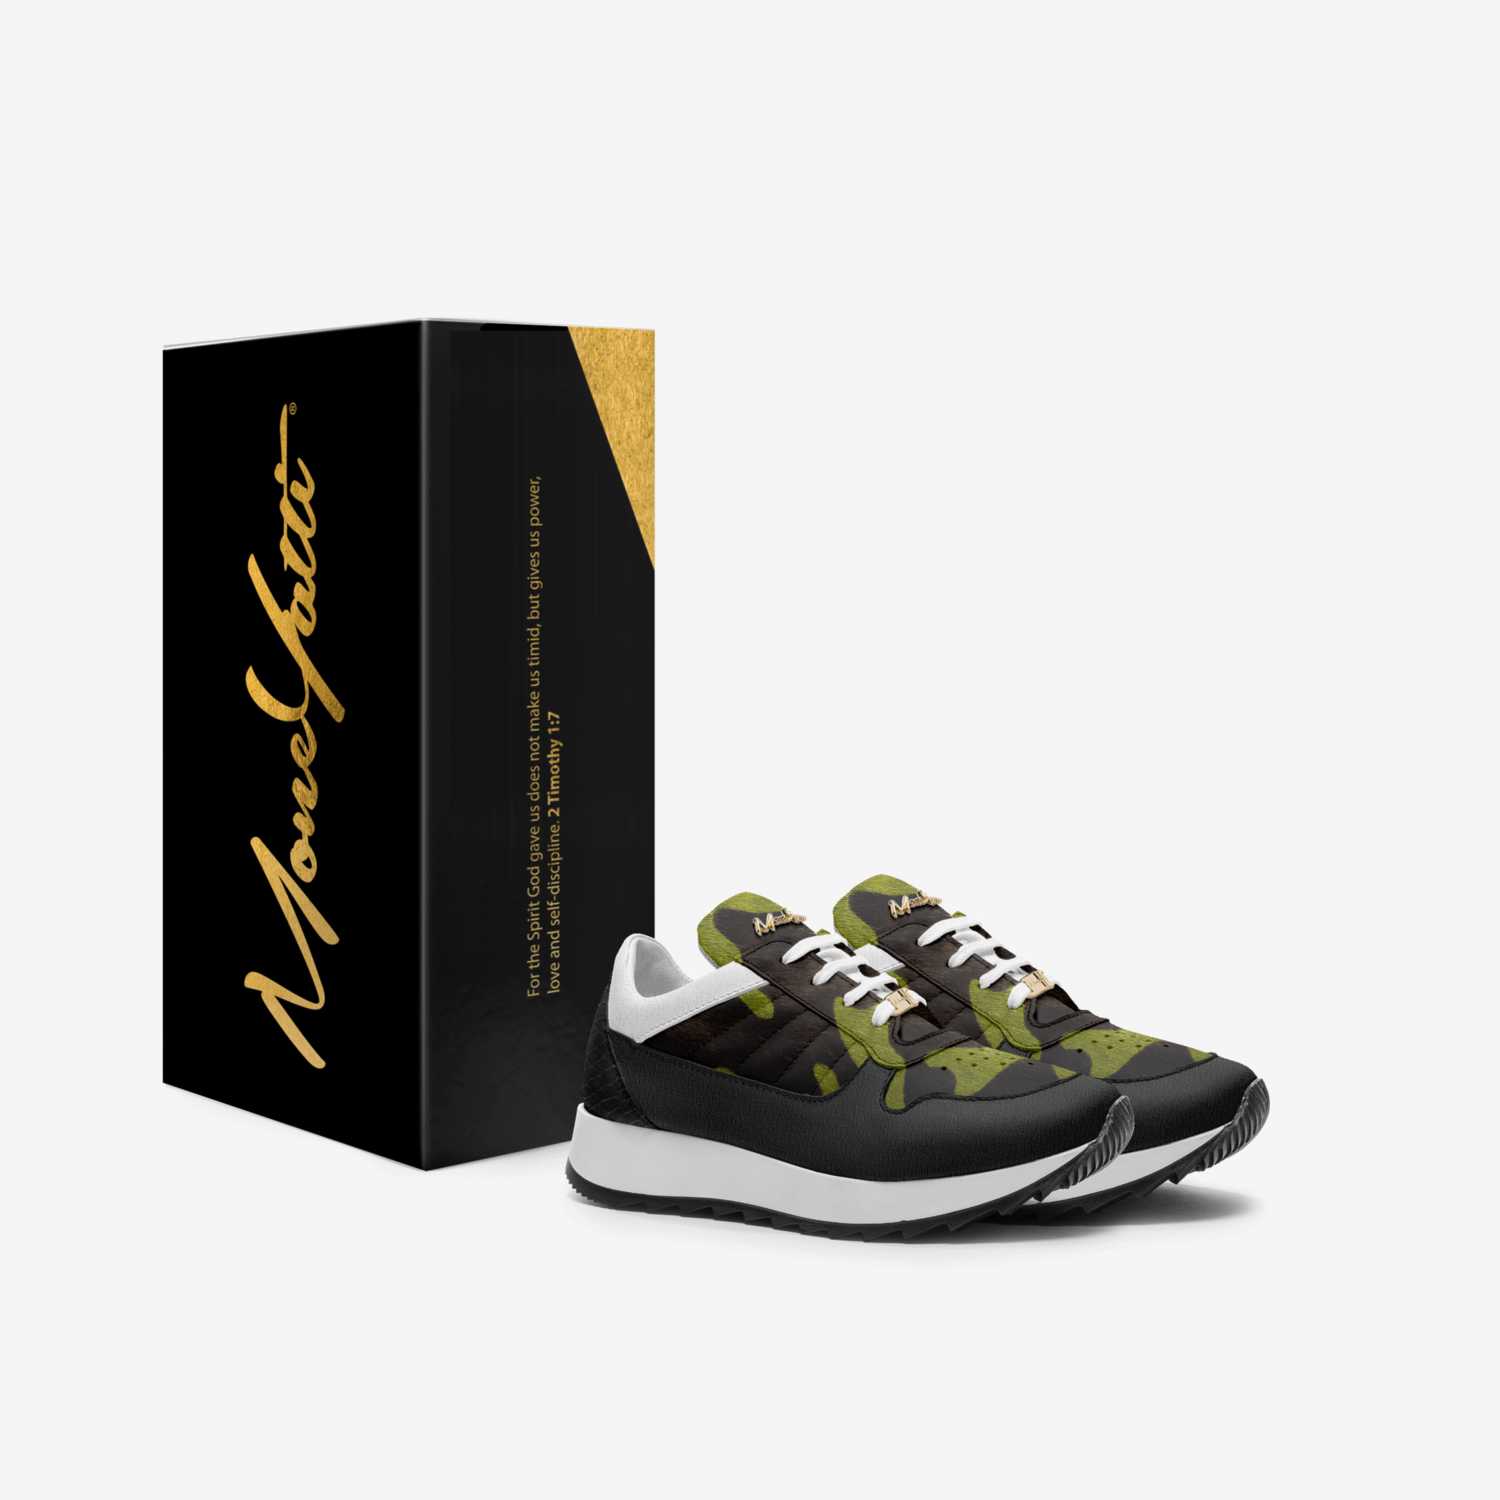 MONEYATTI KIDLW09 custom made in Italy shoes by Moneyatti Brand | Box view